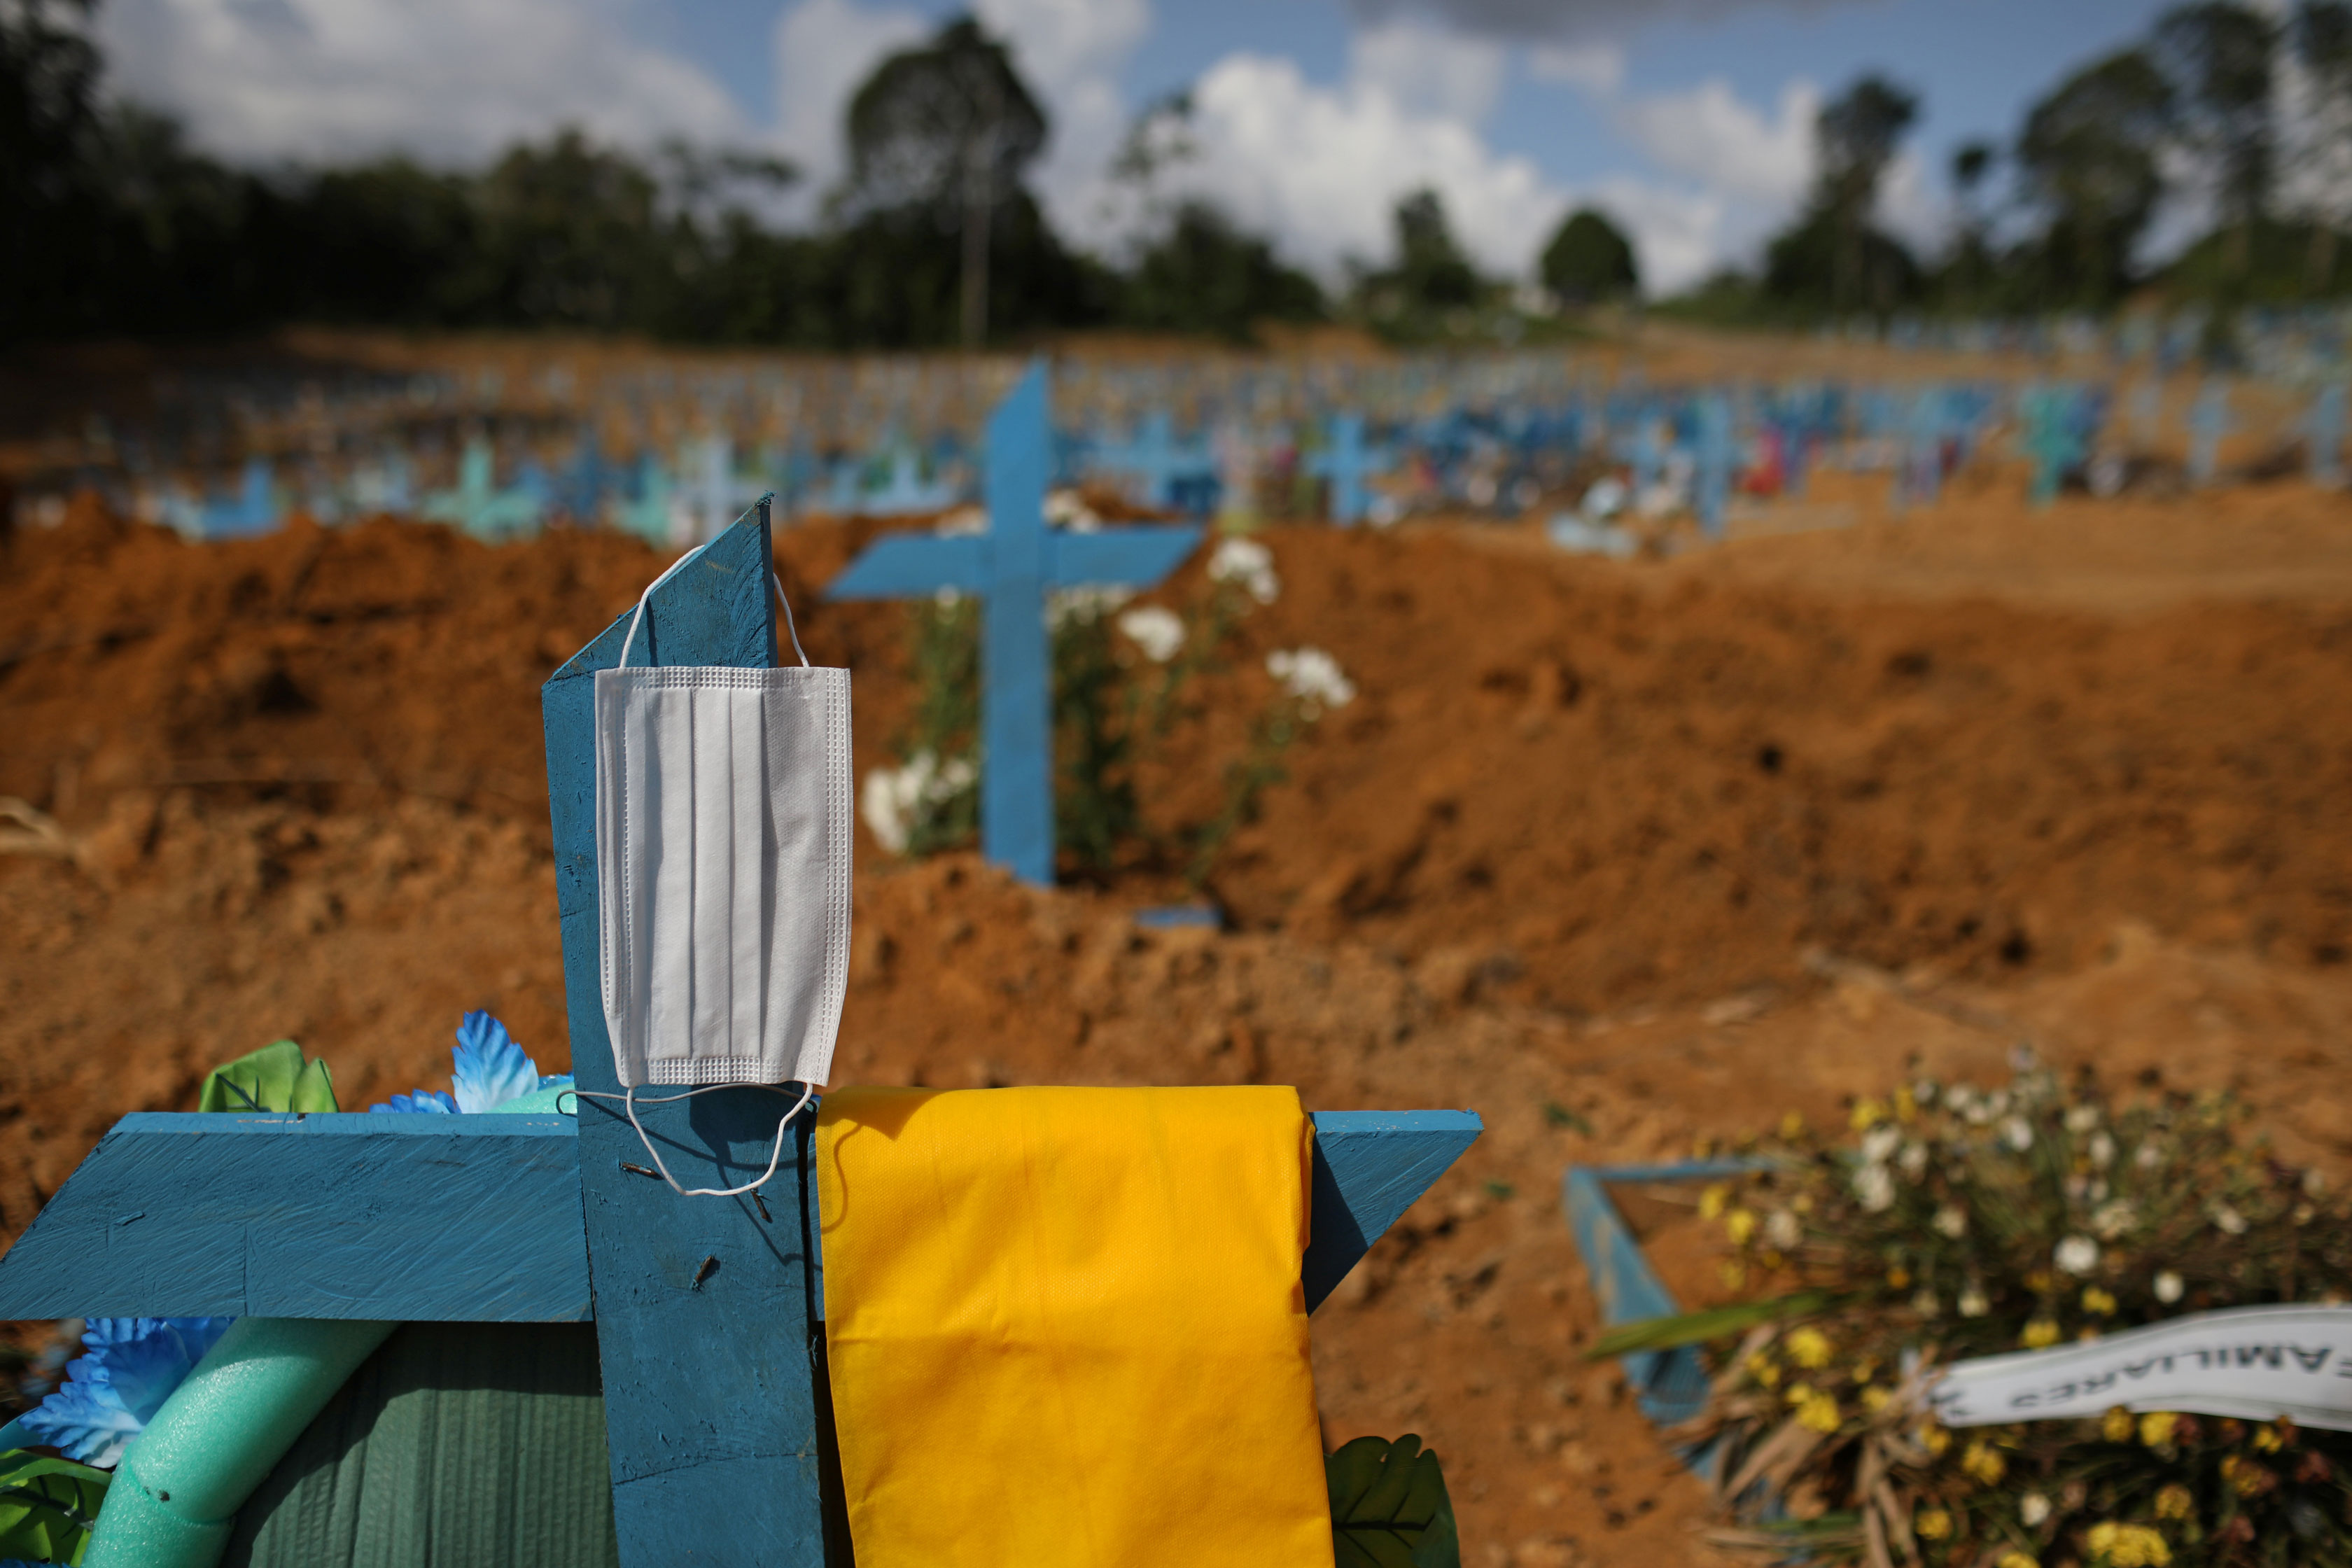 Cemitério em Manaus (AM) durante a pandemia da Covid-19